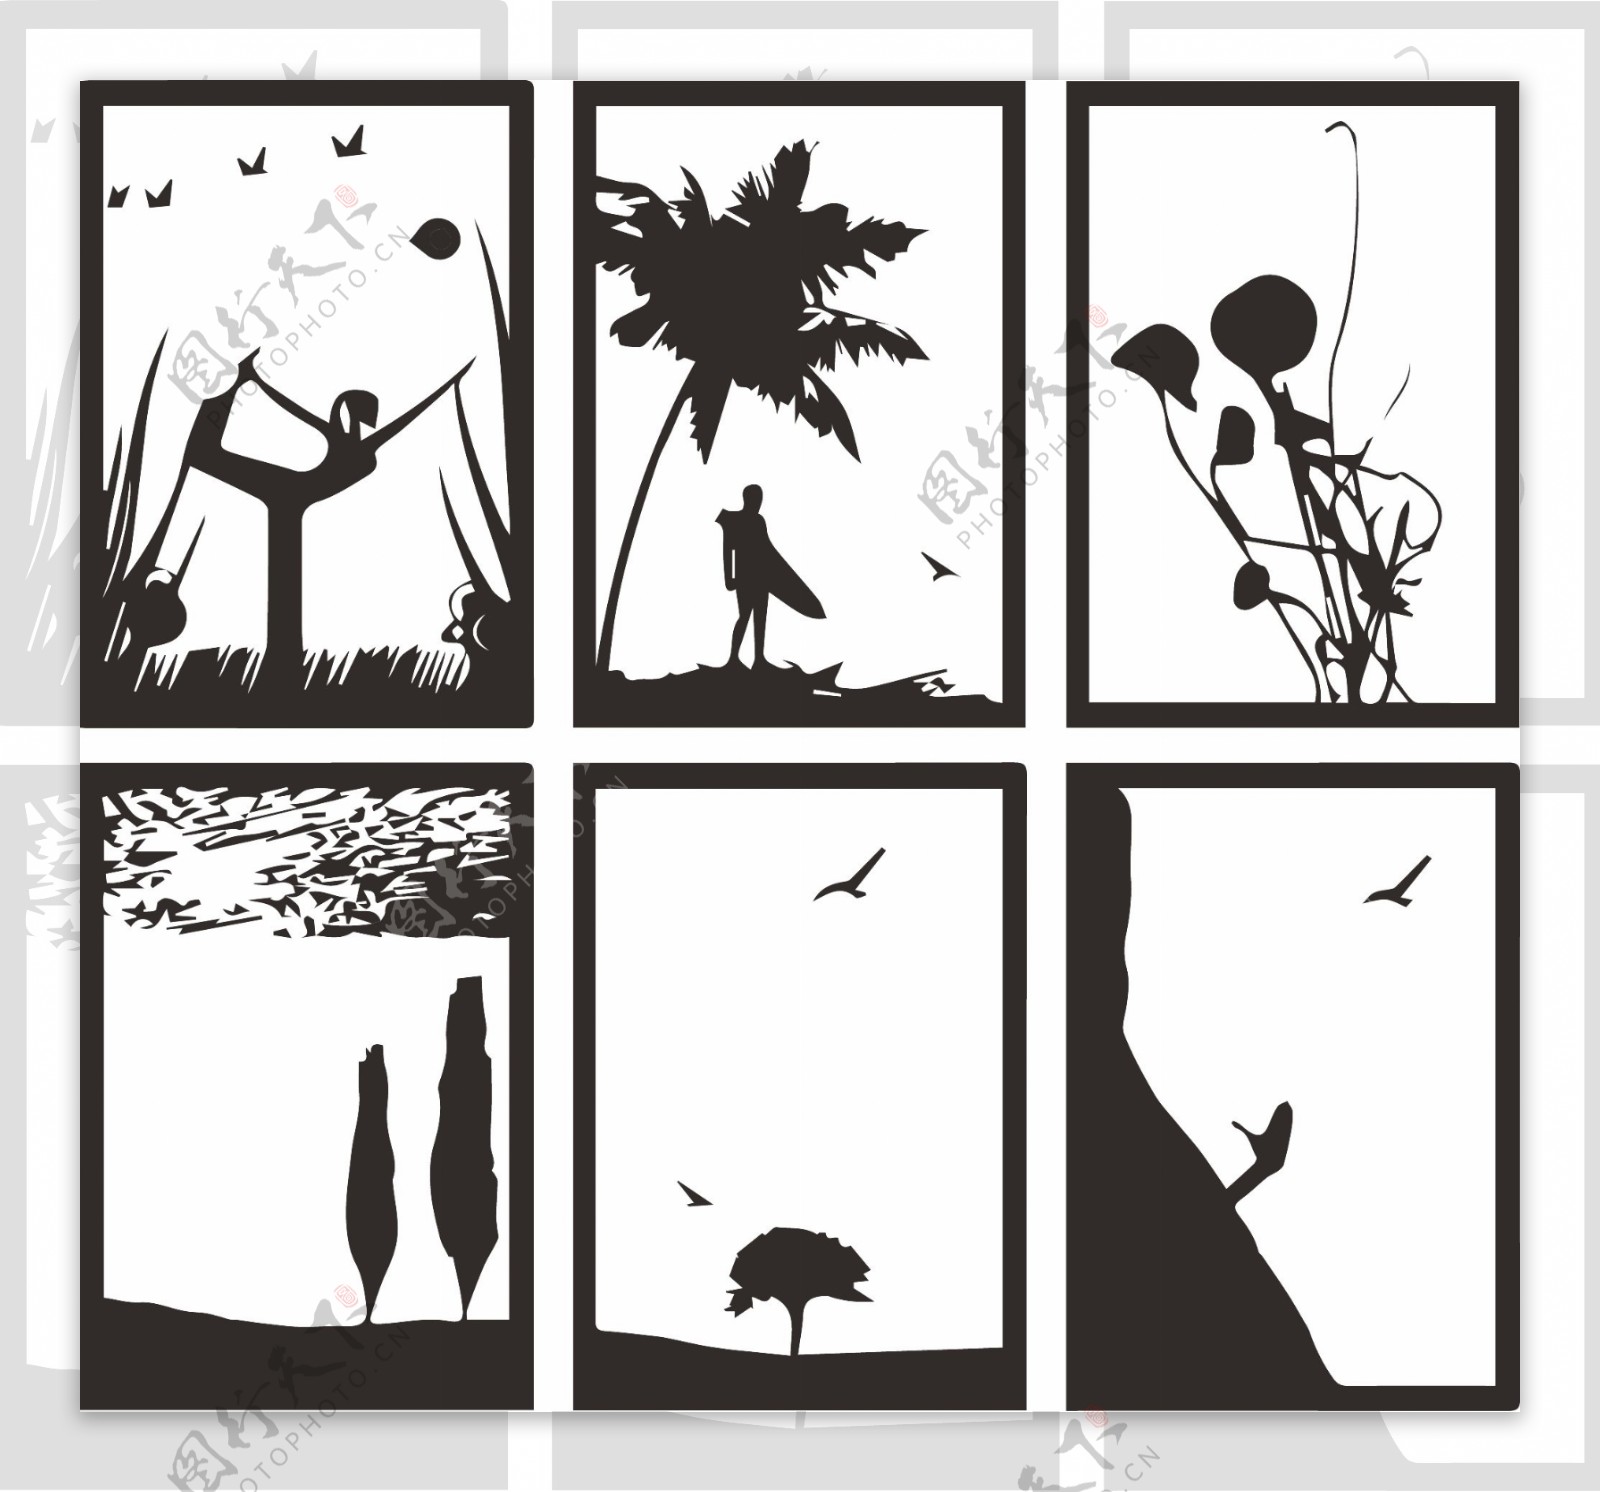 黑白装饰画装饰画人物风景植物动物底稿黑稿墙画